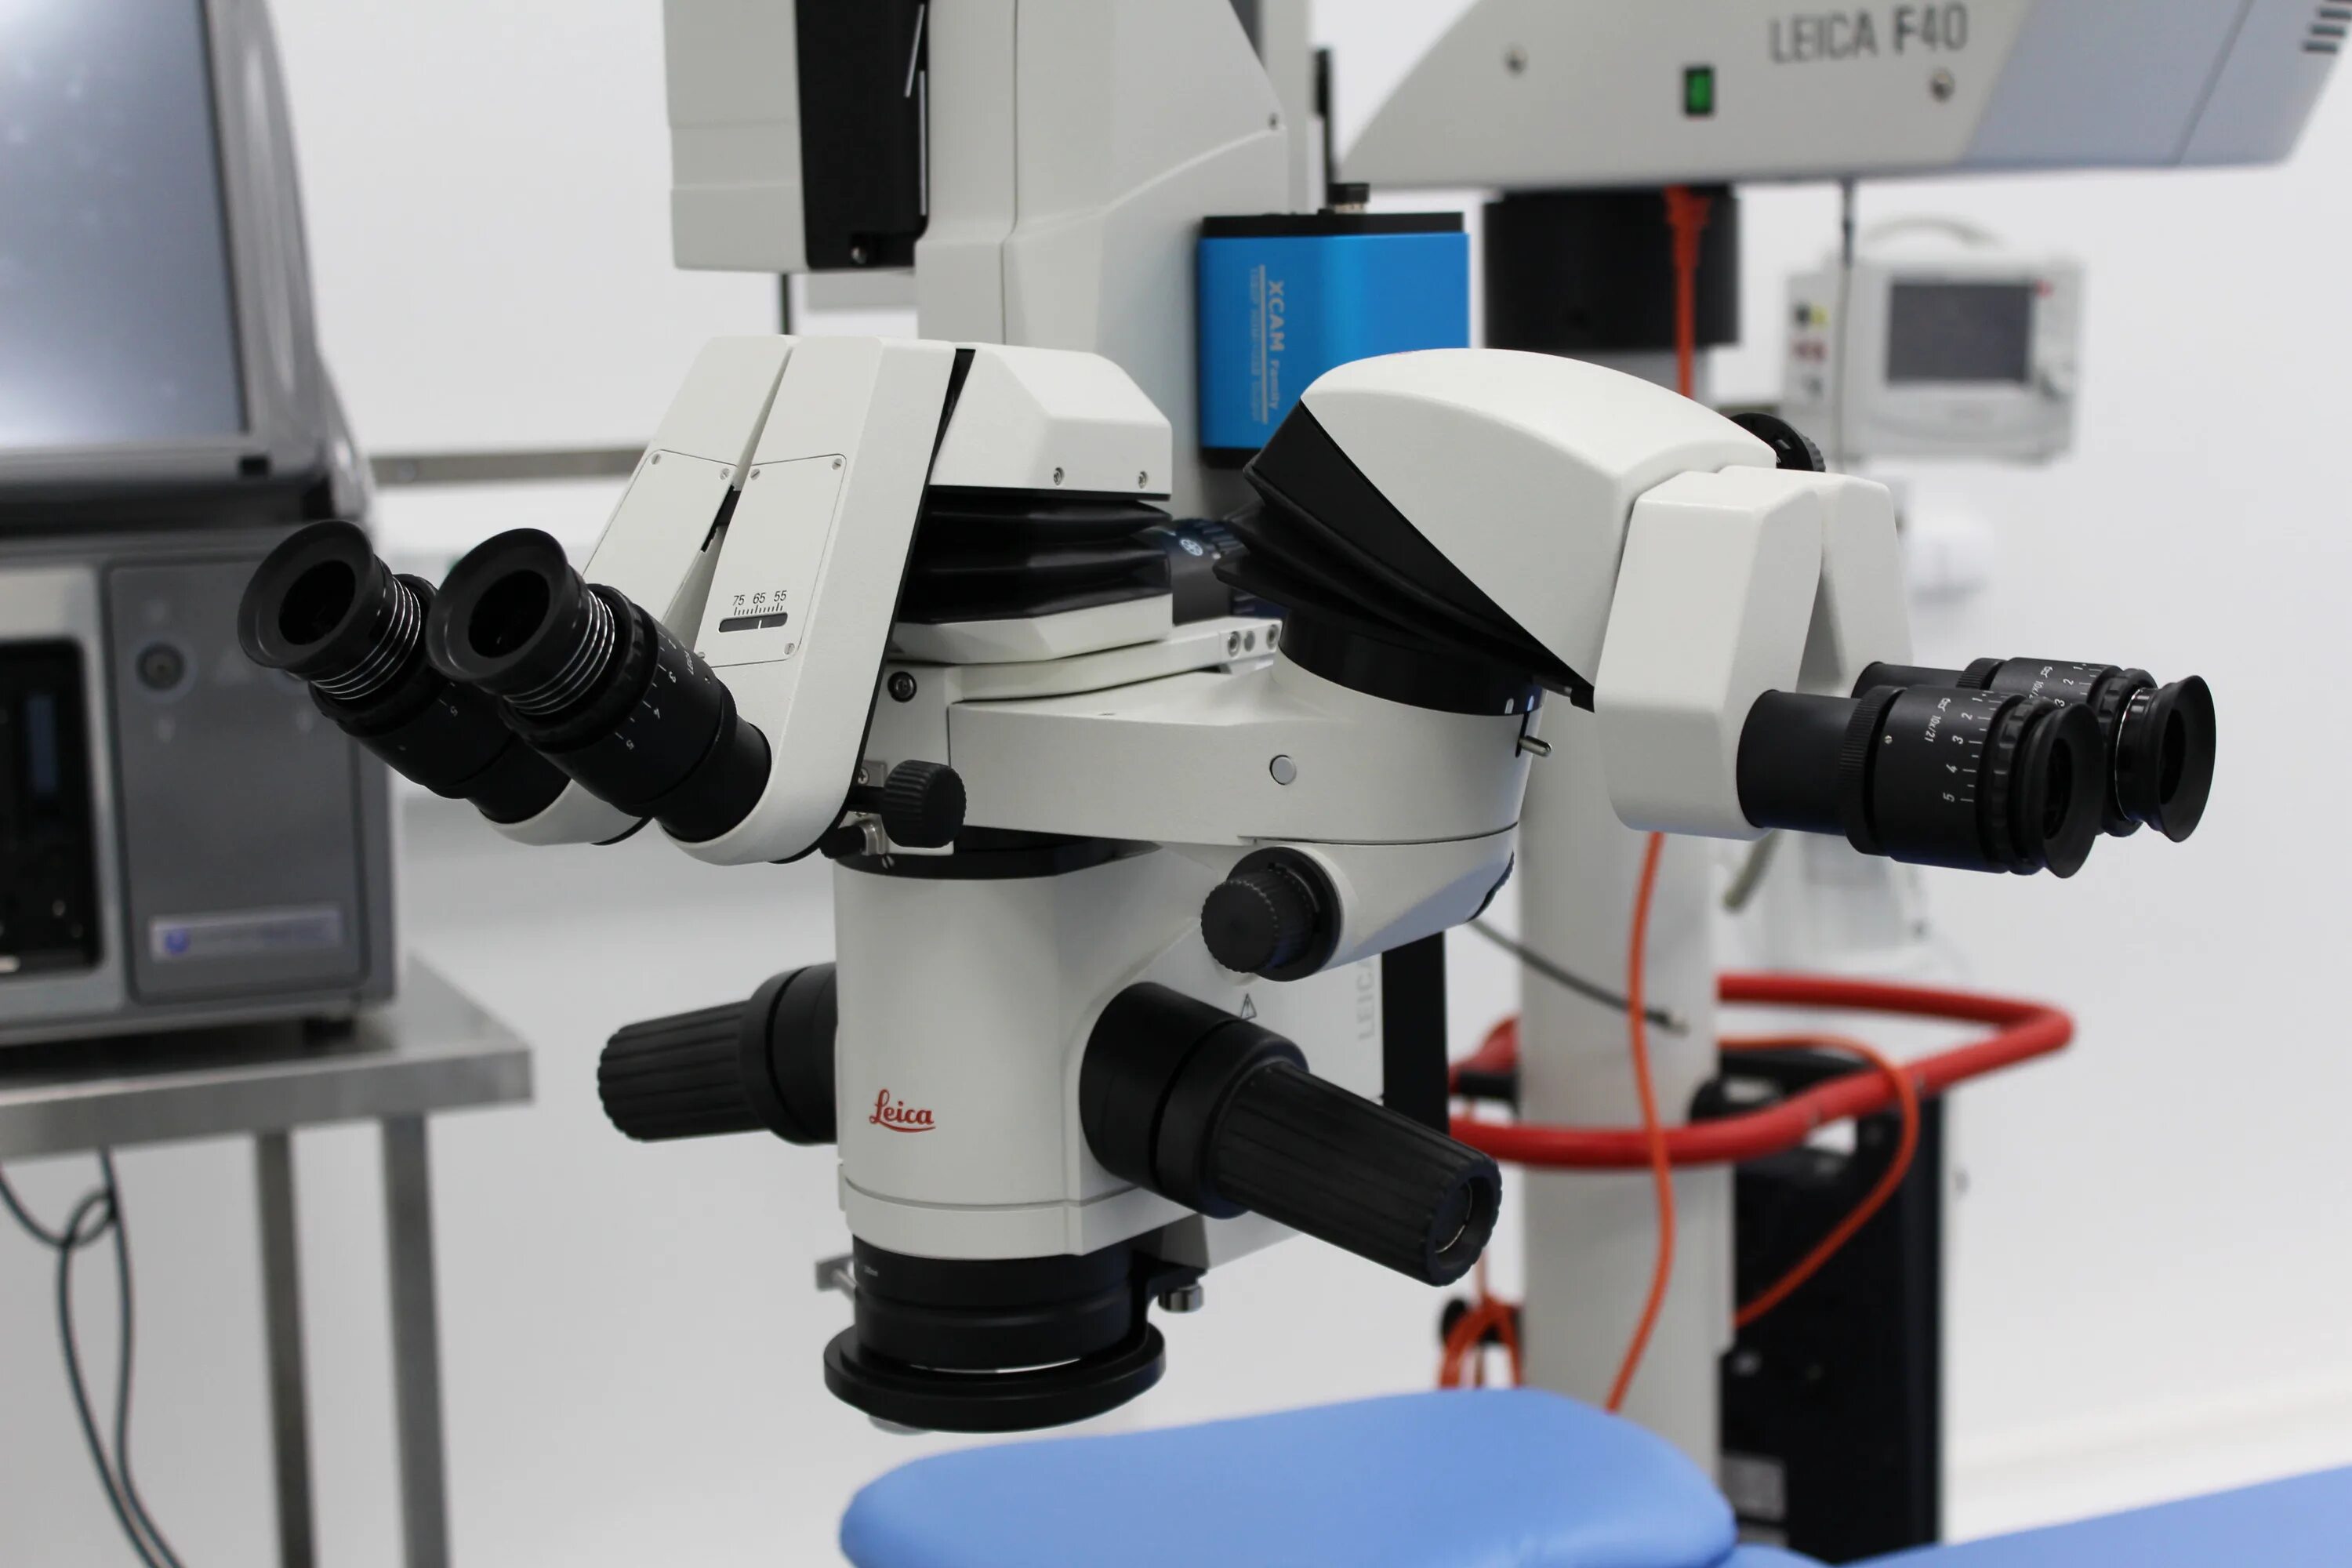 Операционный микроскоп Leica m844 f40 Surgical Microscope. Микроскоп CJ Optic. Лампа щелевая офтальмологическая SL 120. Микроскопа биологического операционного Leica m844. Vision systems